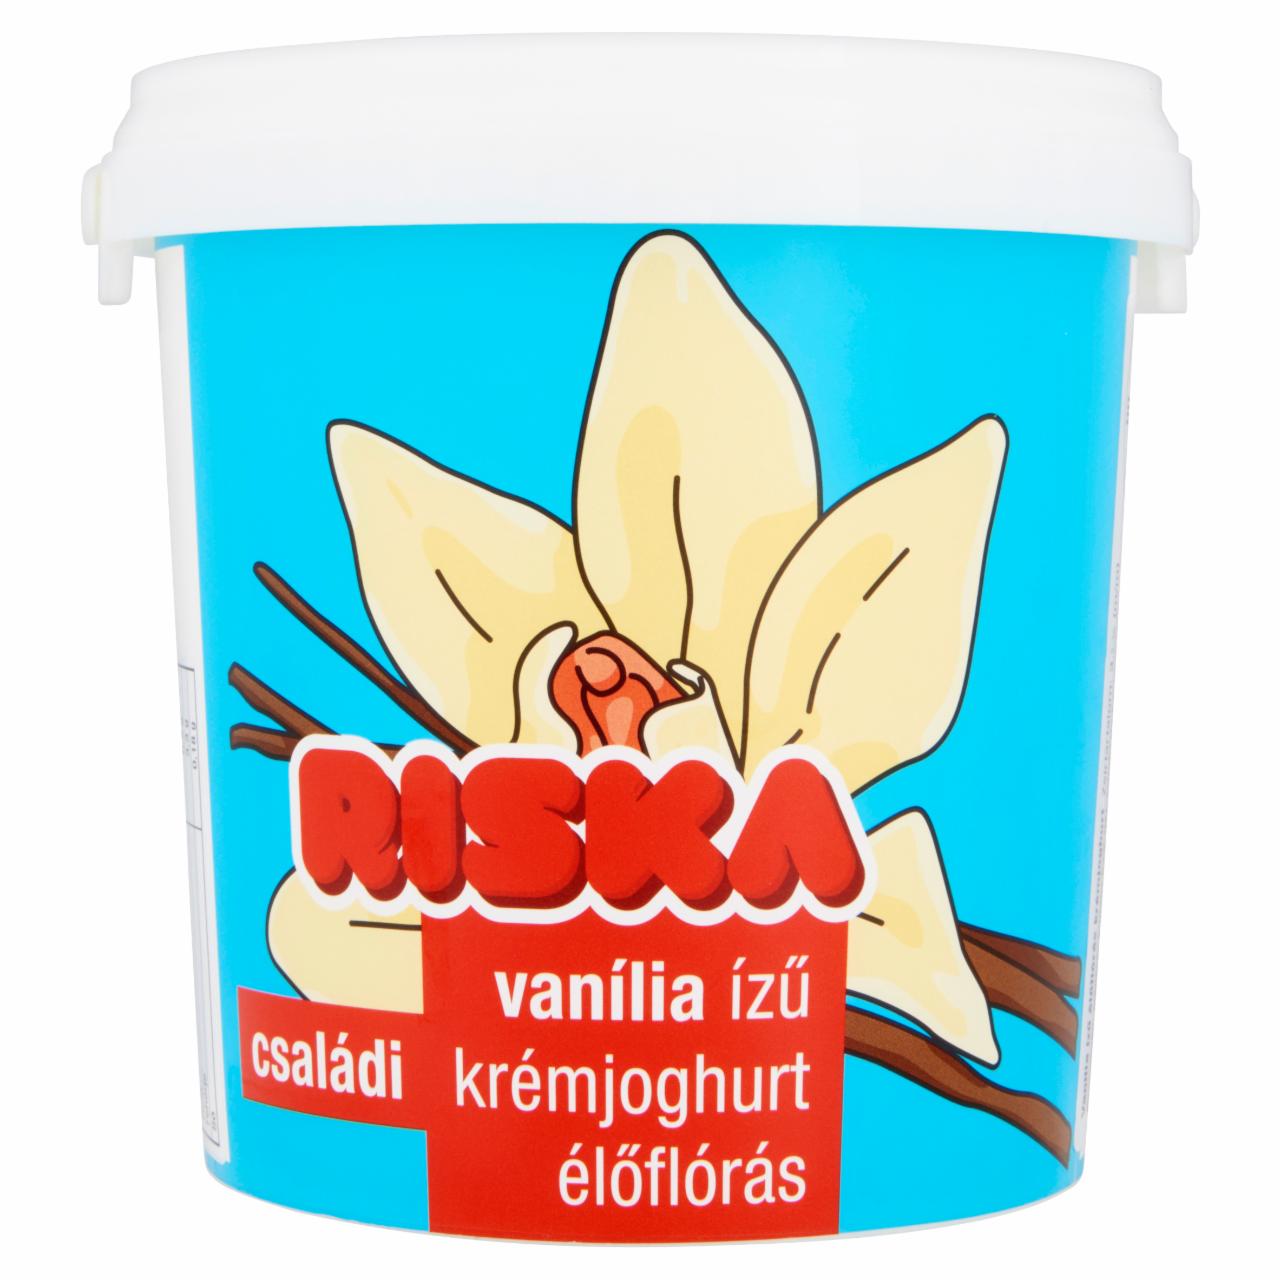 Képek - Riska családi vanília ízű élőflórás krémjoghurt 850 g